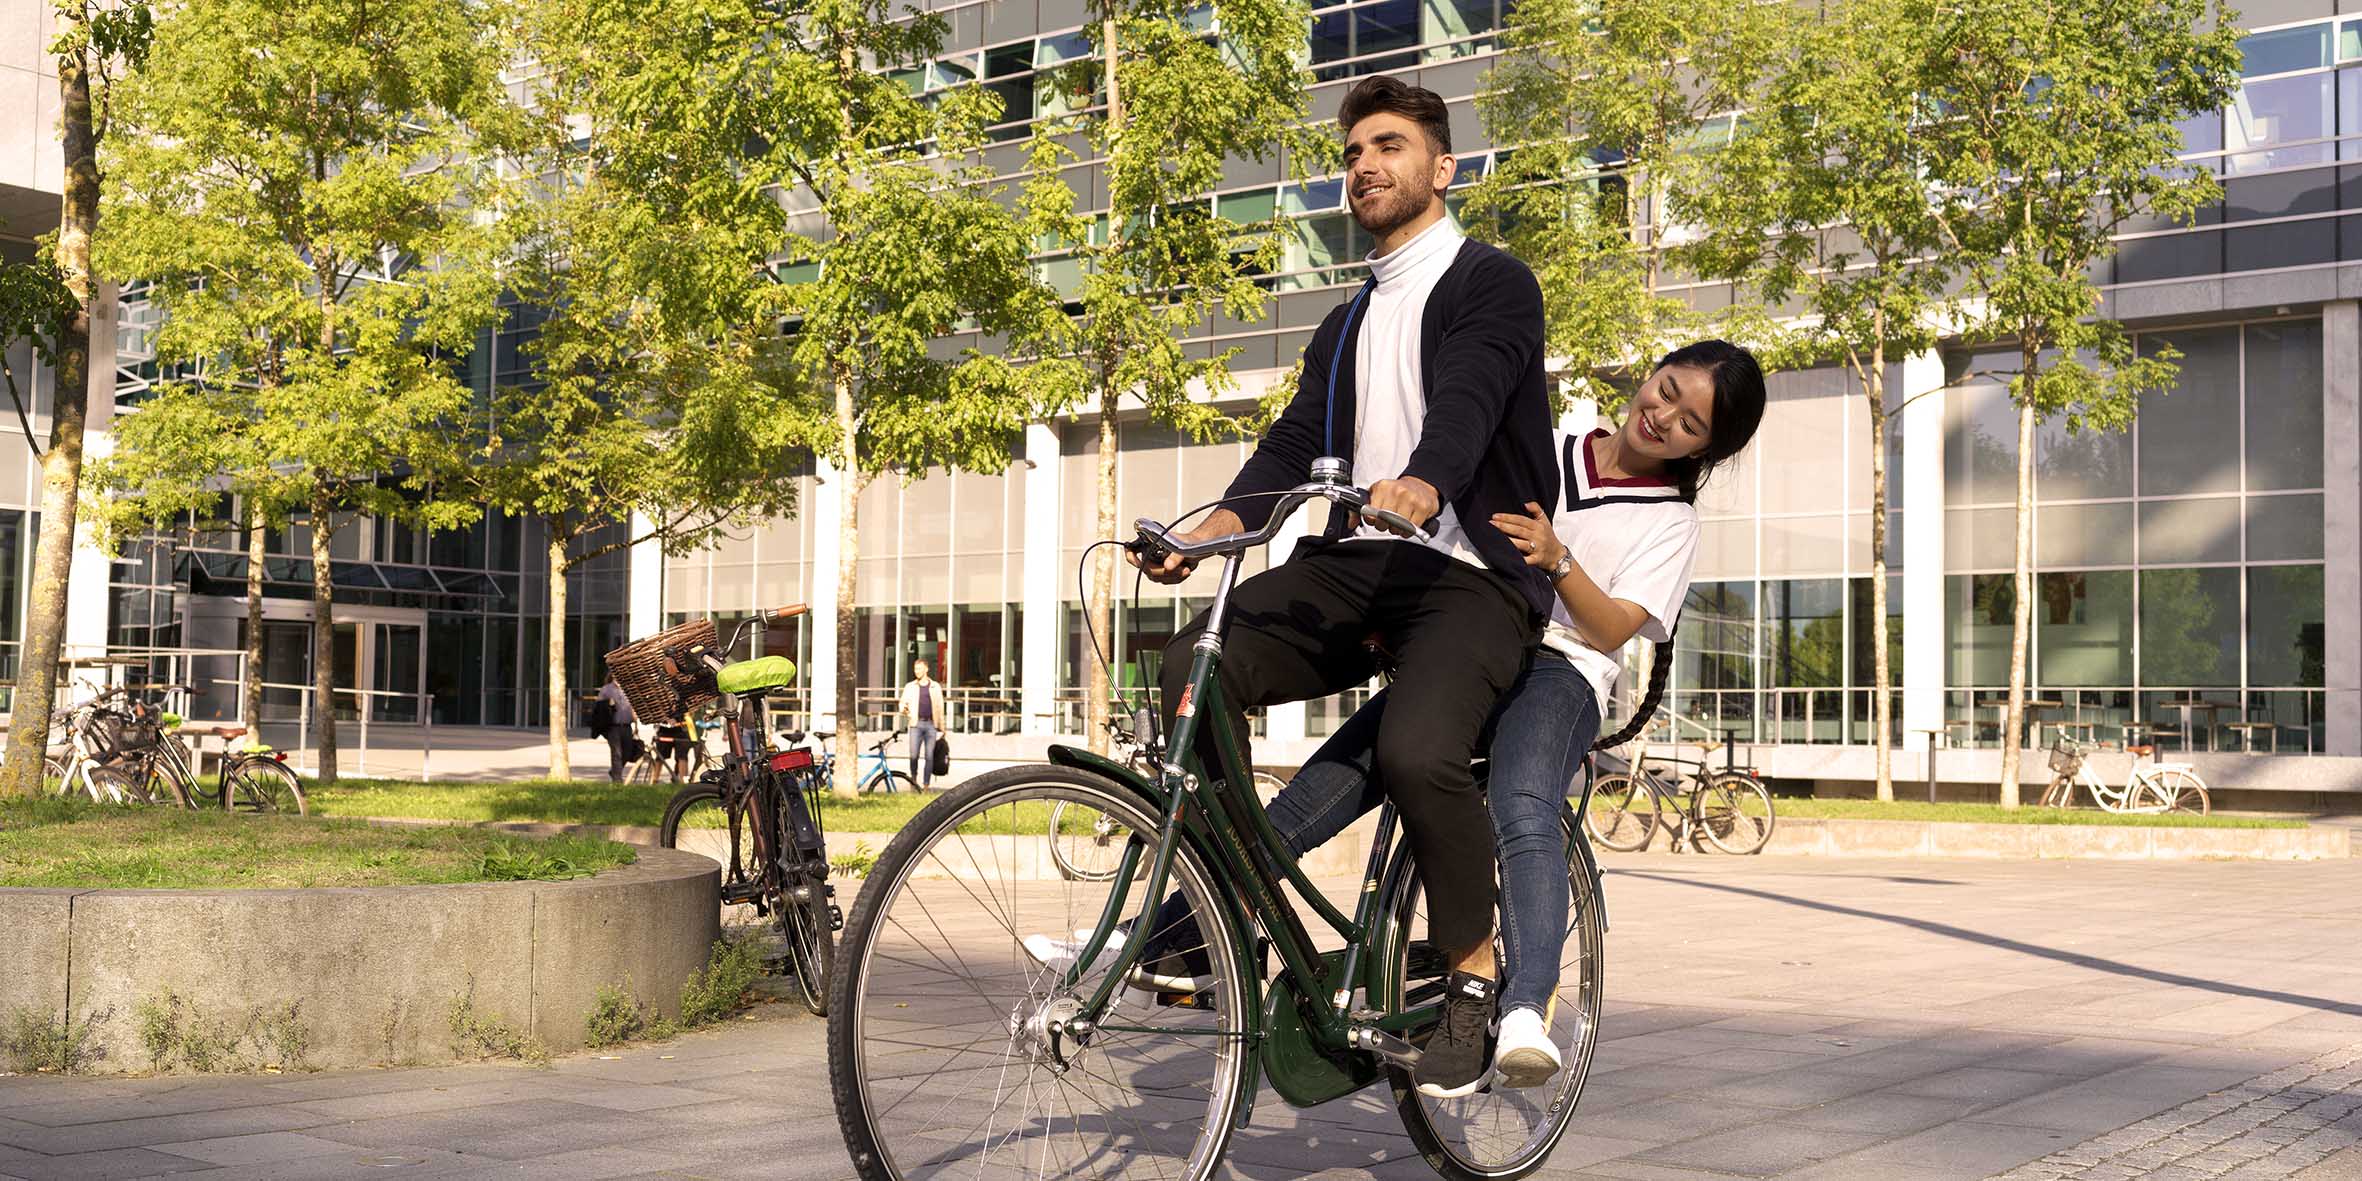 En kille med mörka kläder cyklar på en cykel med en tjej sittandes på pakethållaren